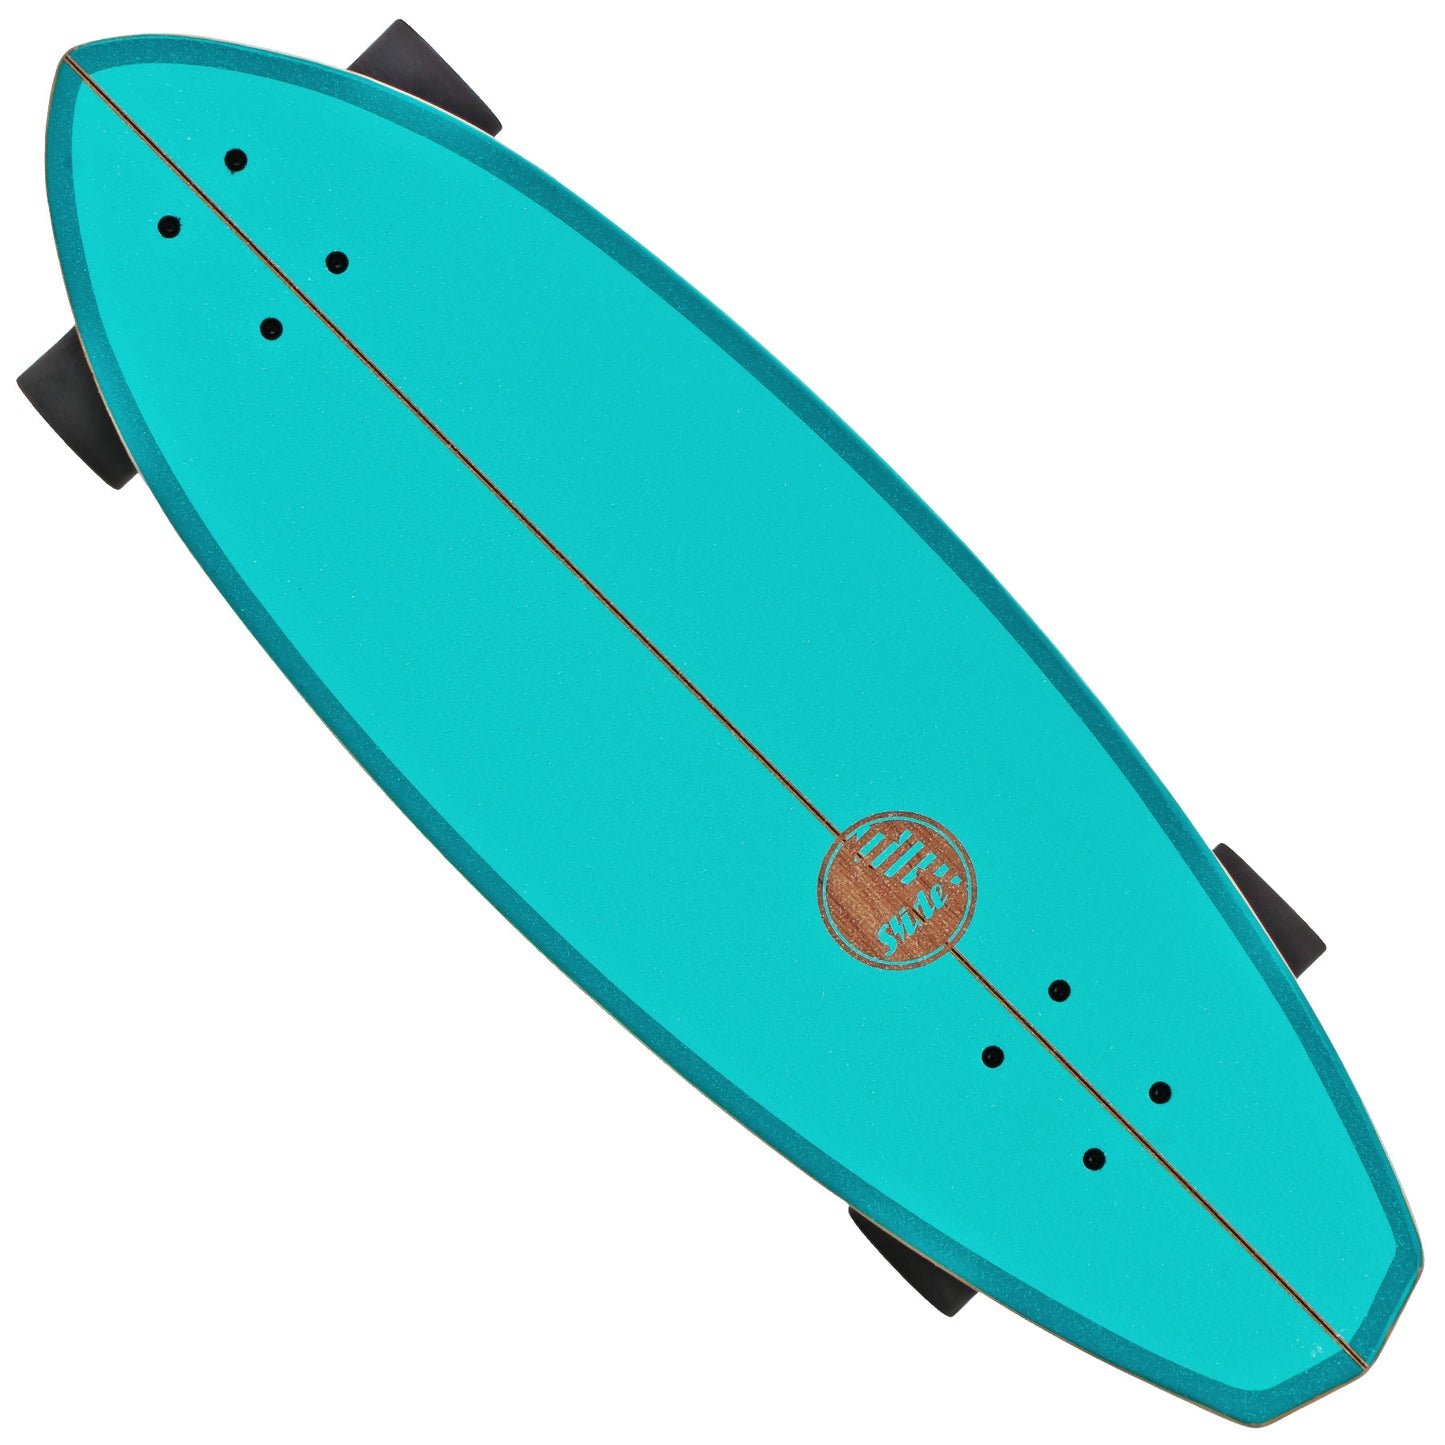 Slide Surfskate Street Surf SkateBoard